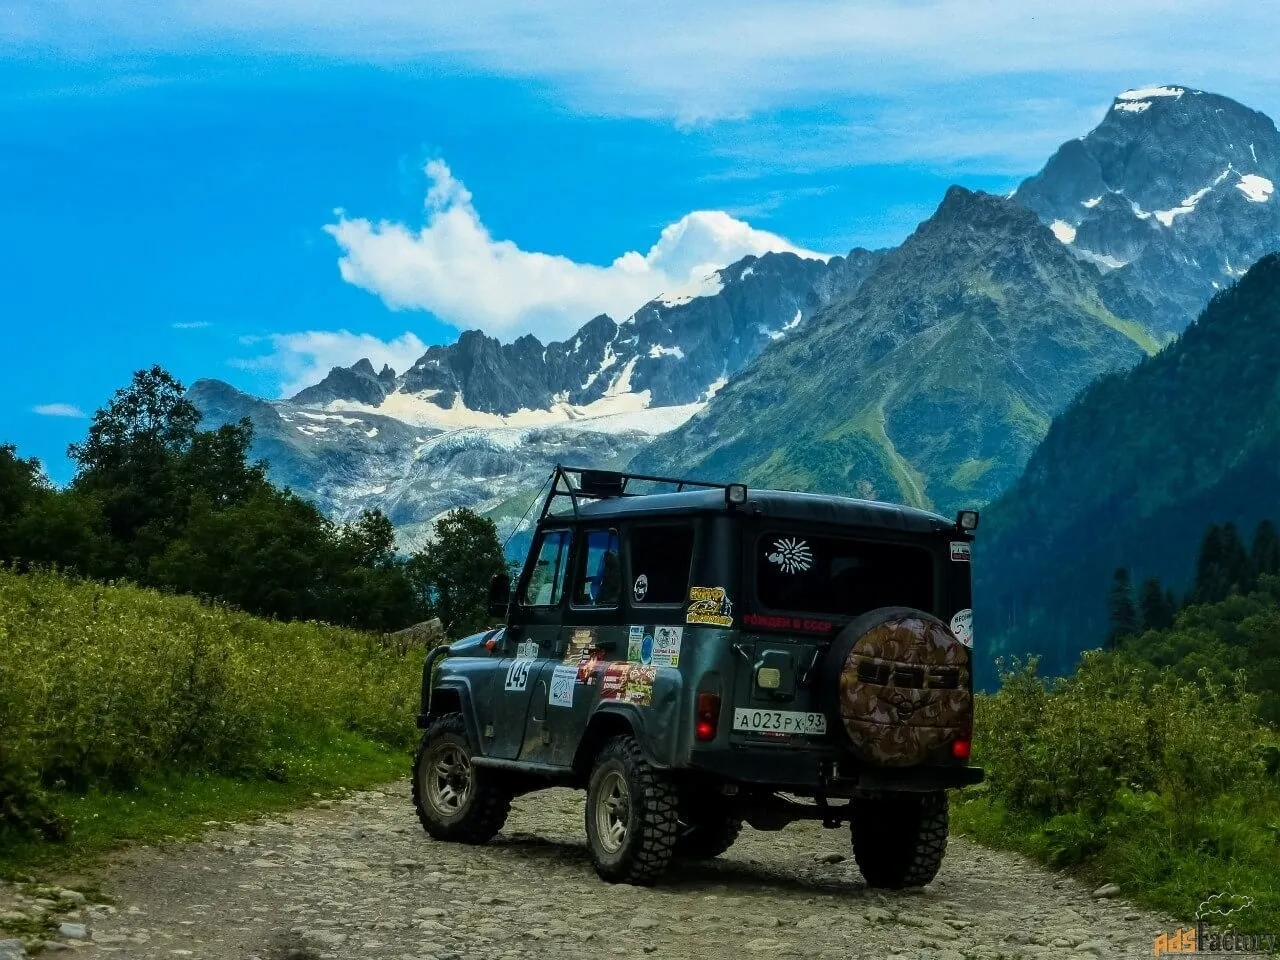 Джип-сафари в горы Таурус: приключение на джипах в горах с посещением деревень, наблюдением за панорамными видами и посещением водопадов